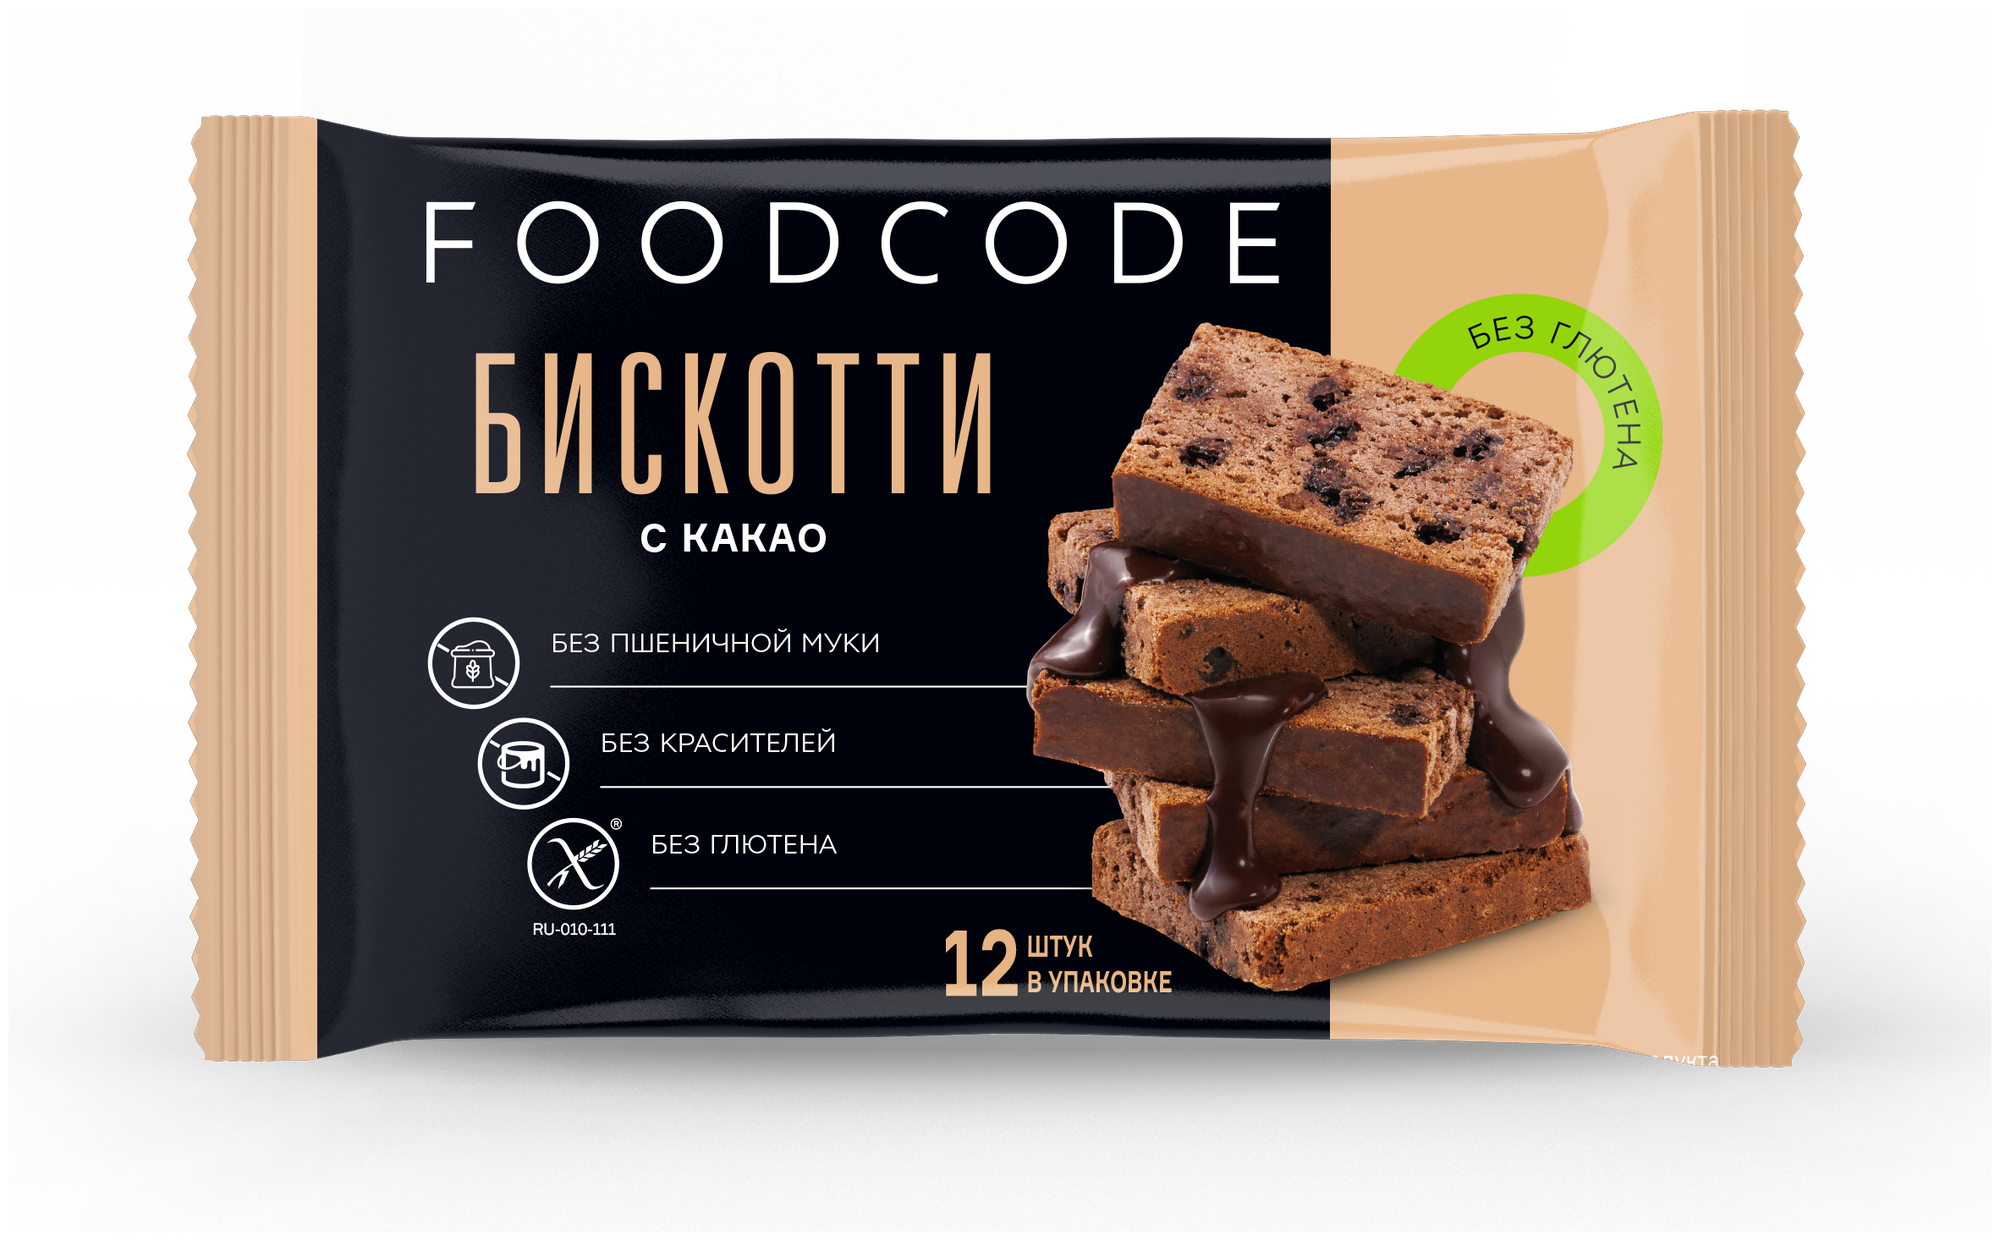 Печенье без глютена для здорового питания Бискотти с какао FOODCODE